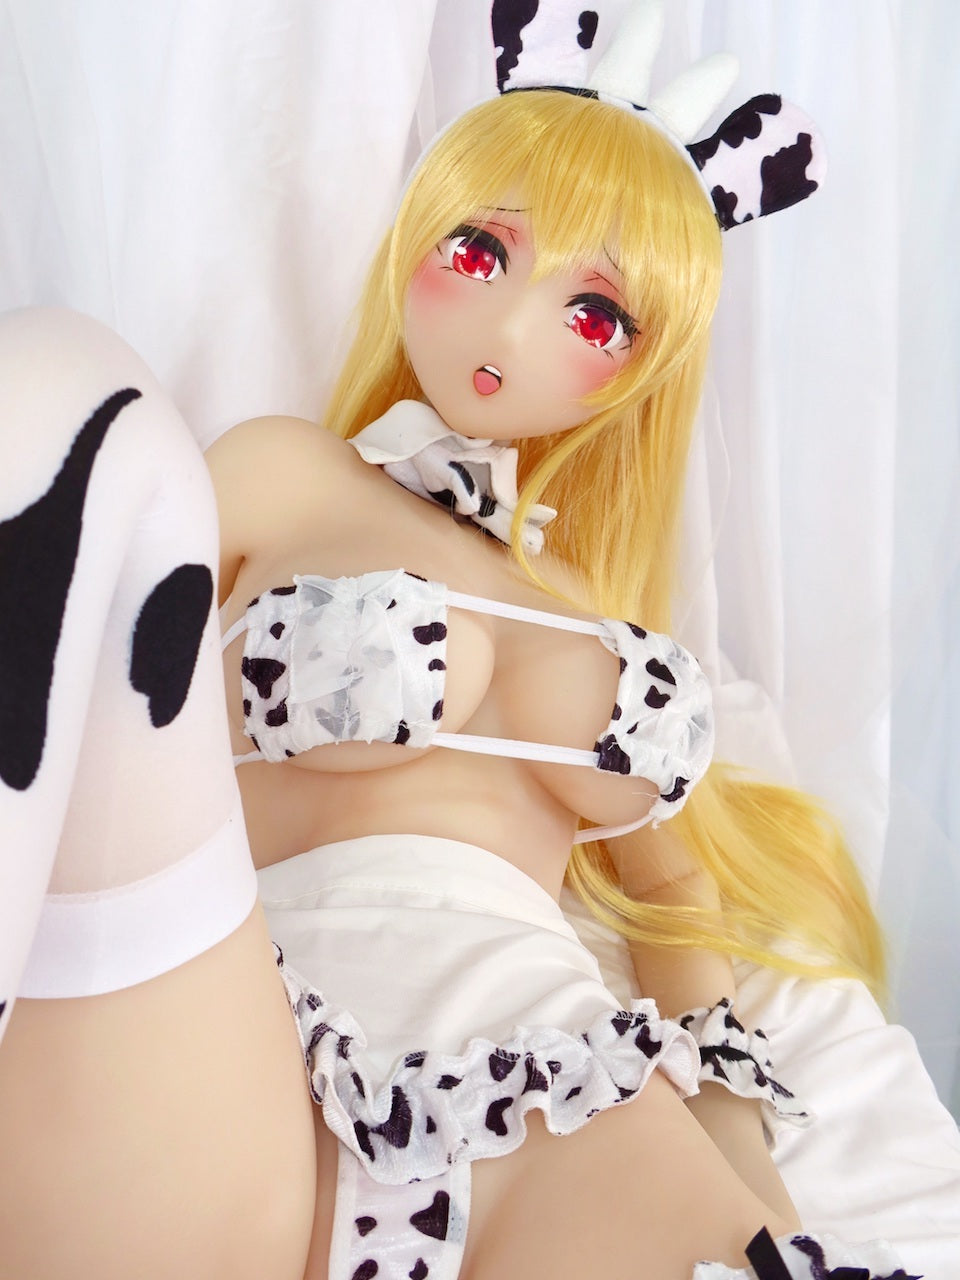 AOTUME Sex Doll (155cm / Fcup) Head #33 - Anime Sex Doll Kitty Cat